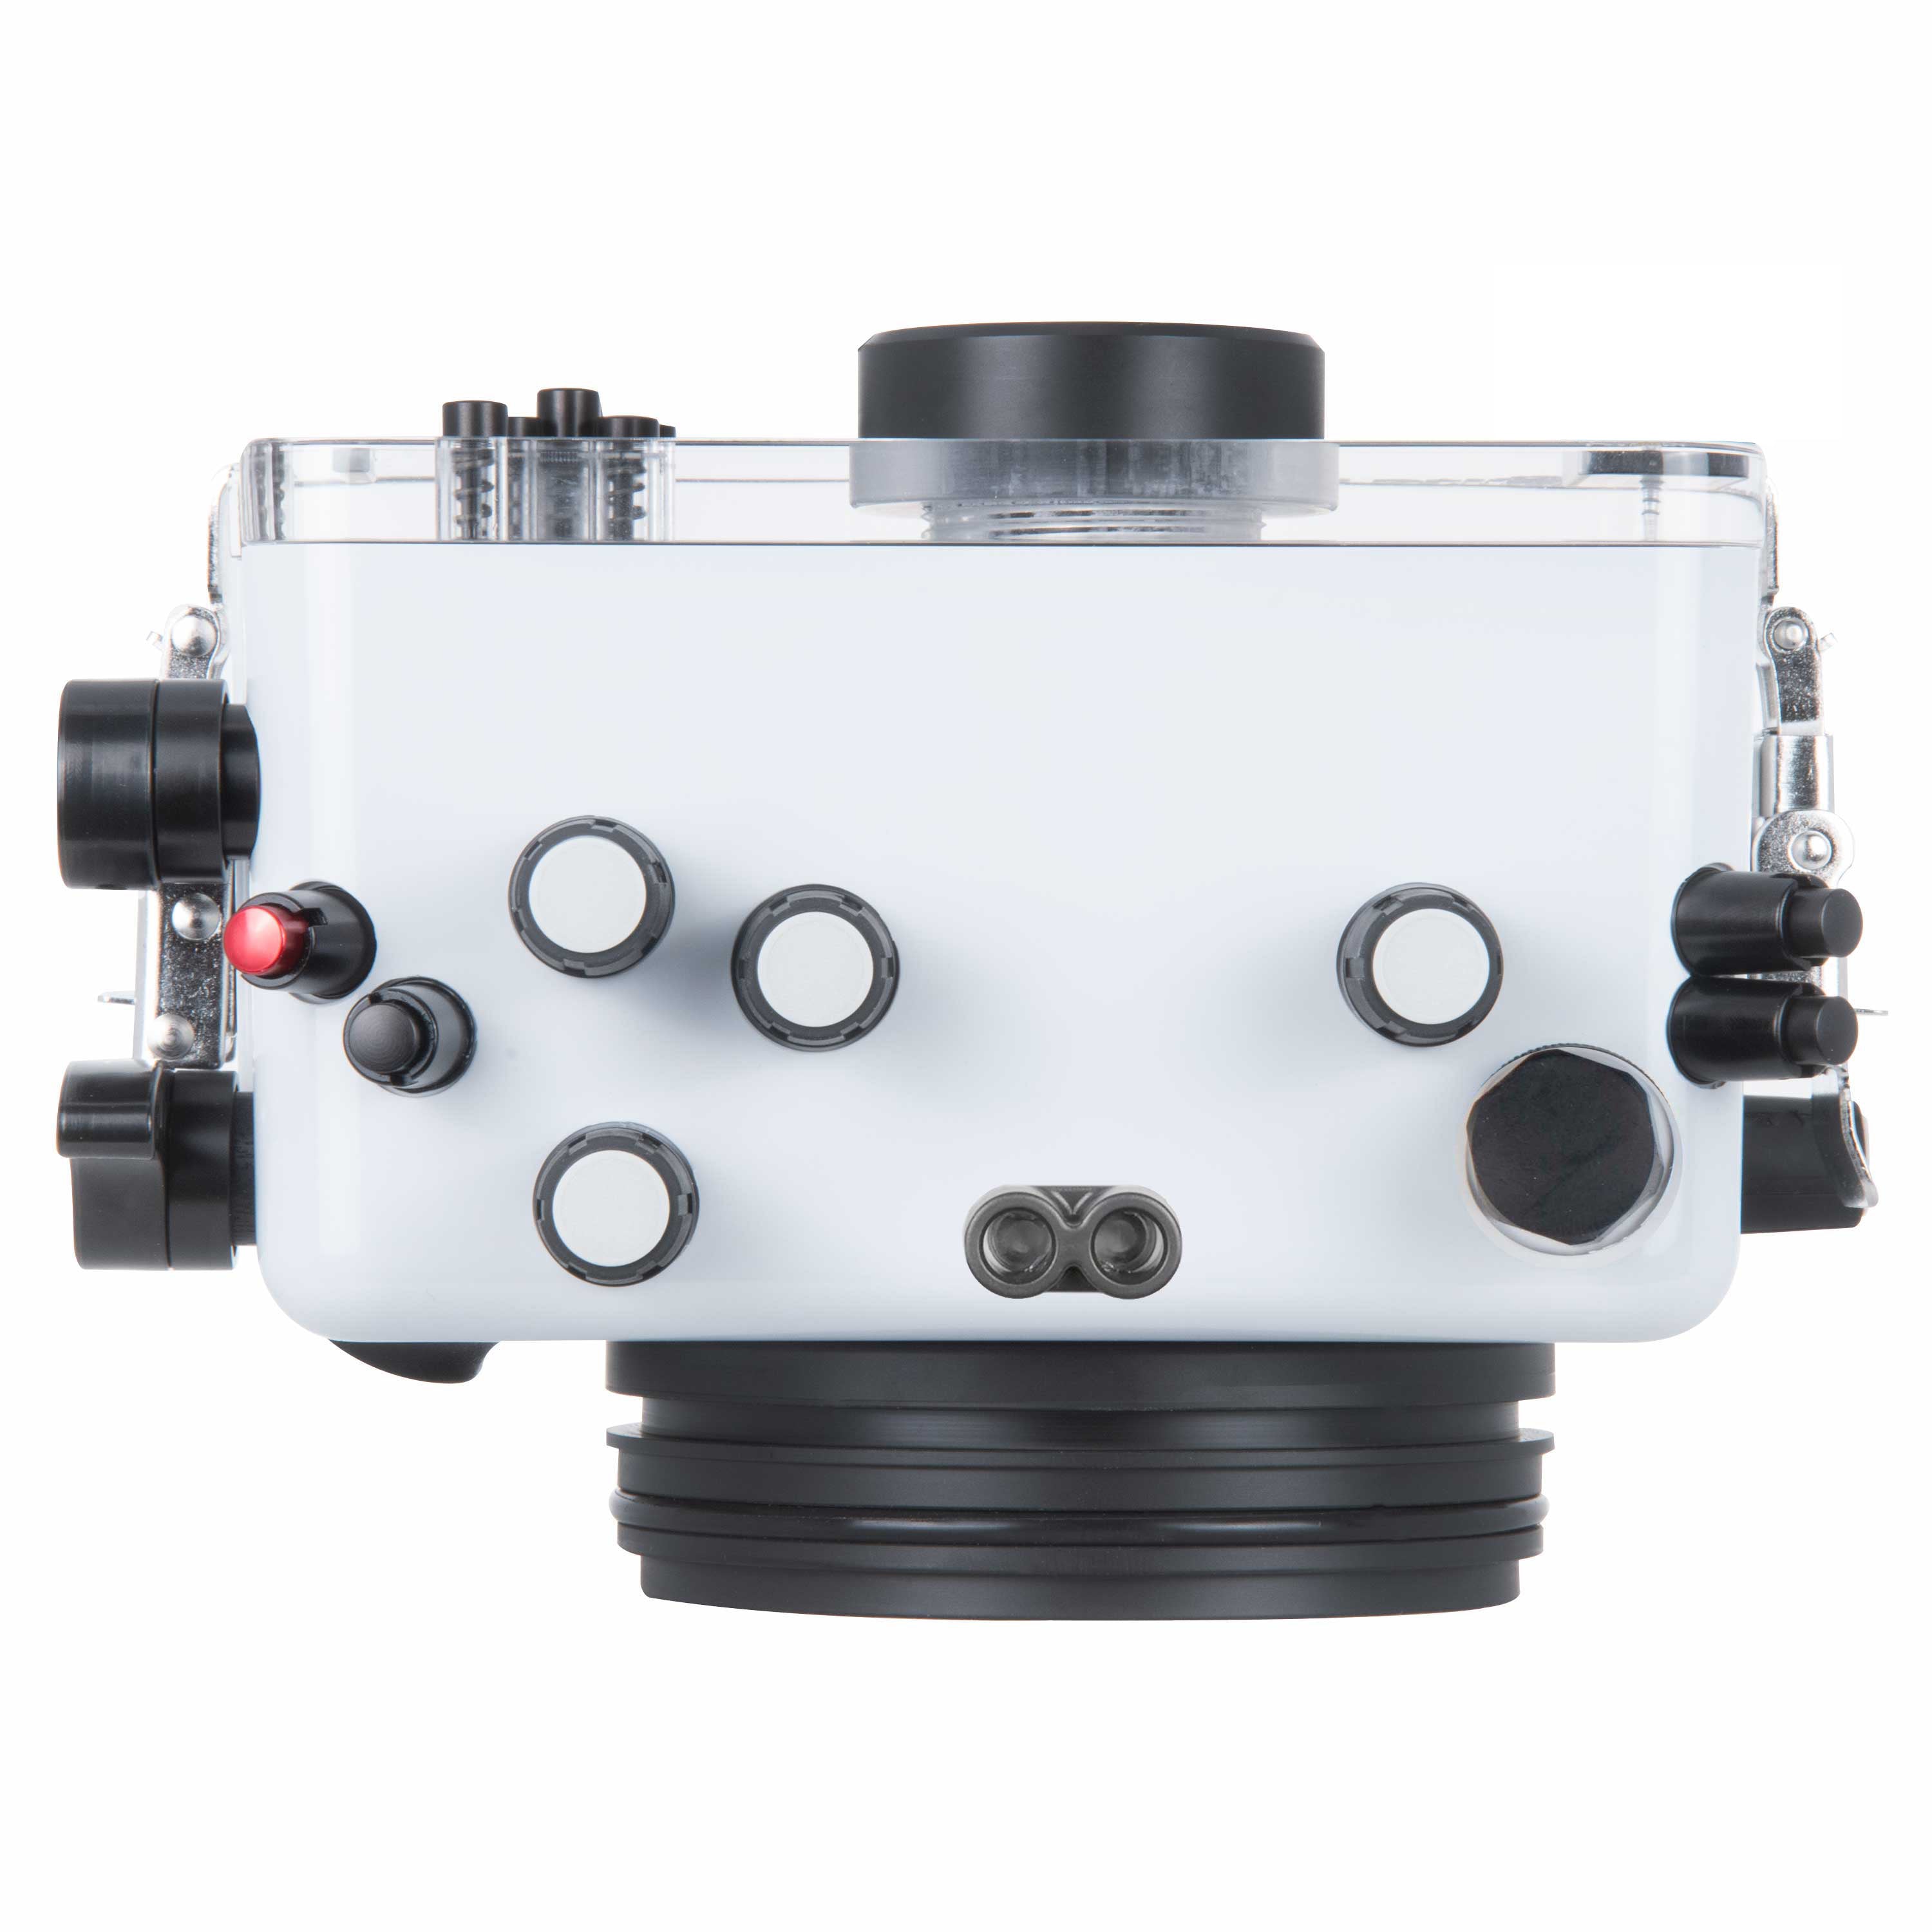 Olympus OM-D E-M10 Mark IV Mirrorless Camera